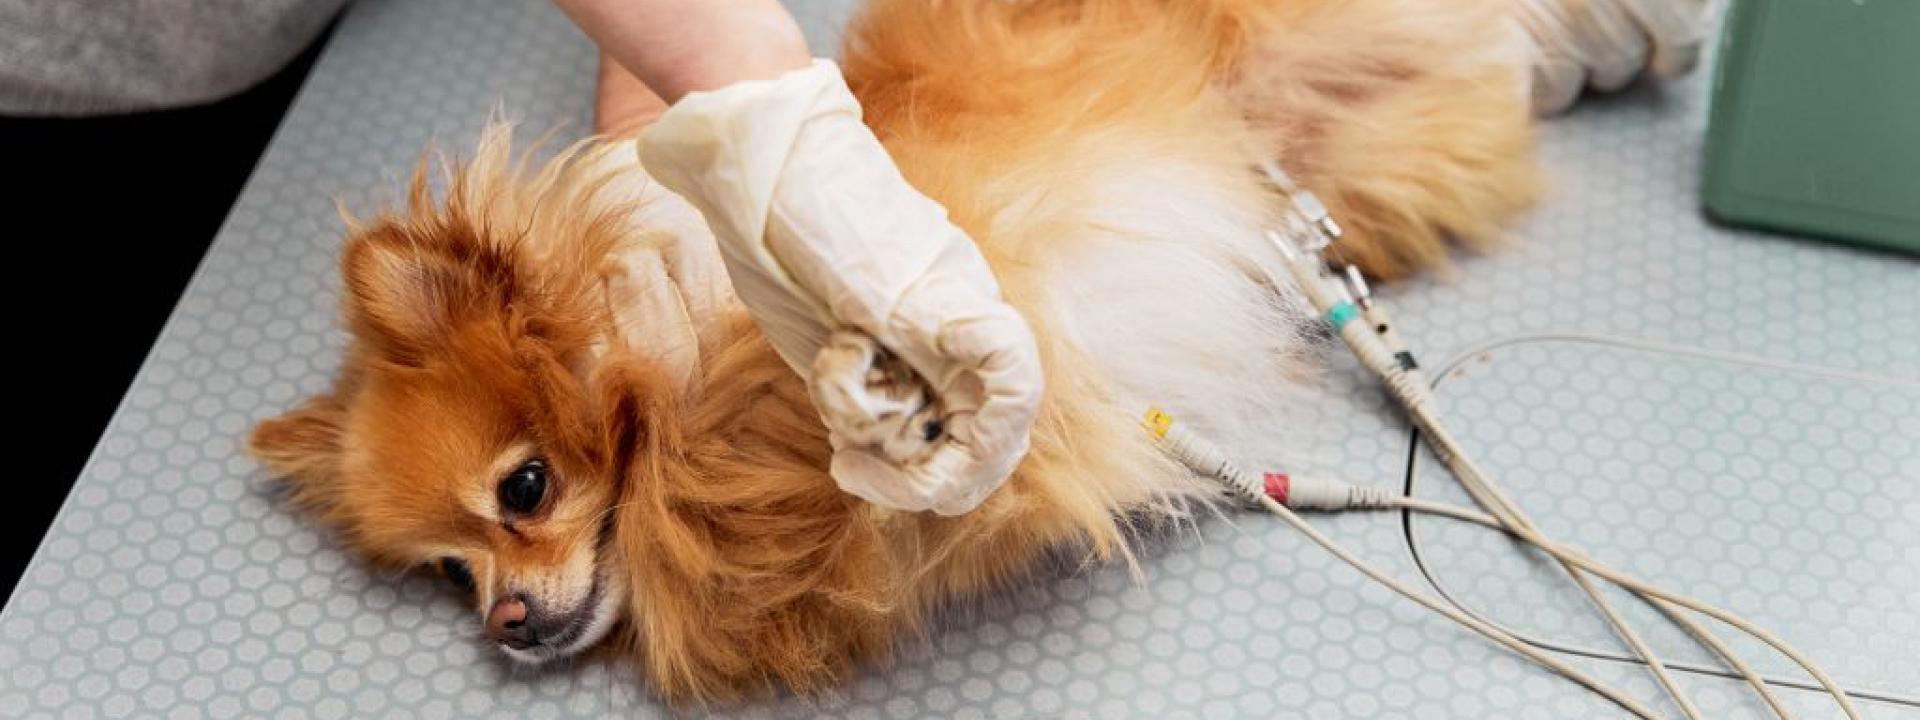 A veterinarian connect electrodes for an electrocardiogram examination